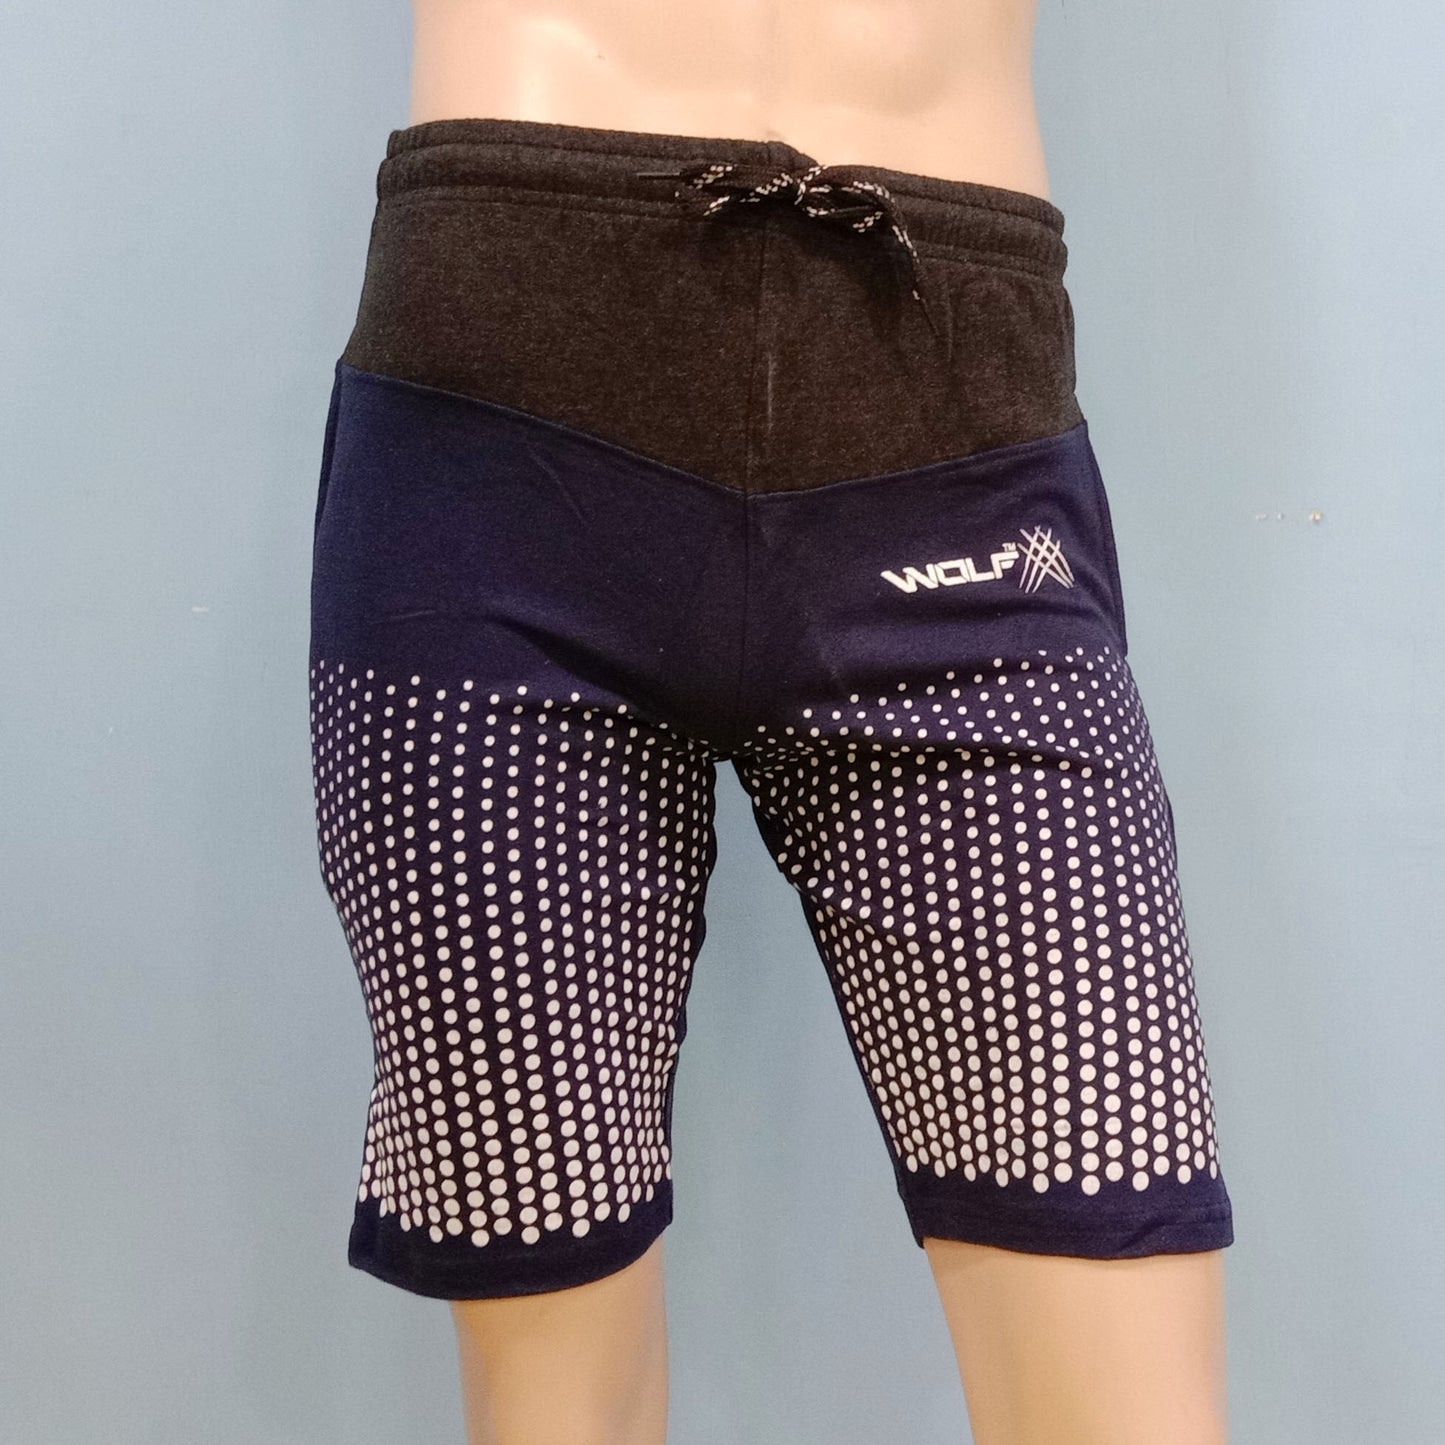 Branded Designer Shorts for Men - 5 Designs - SS7 - Faritha